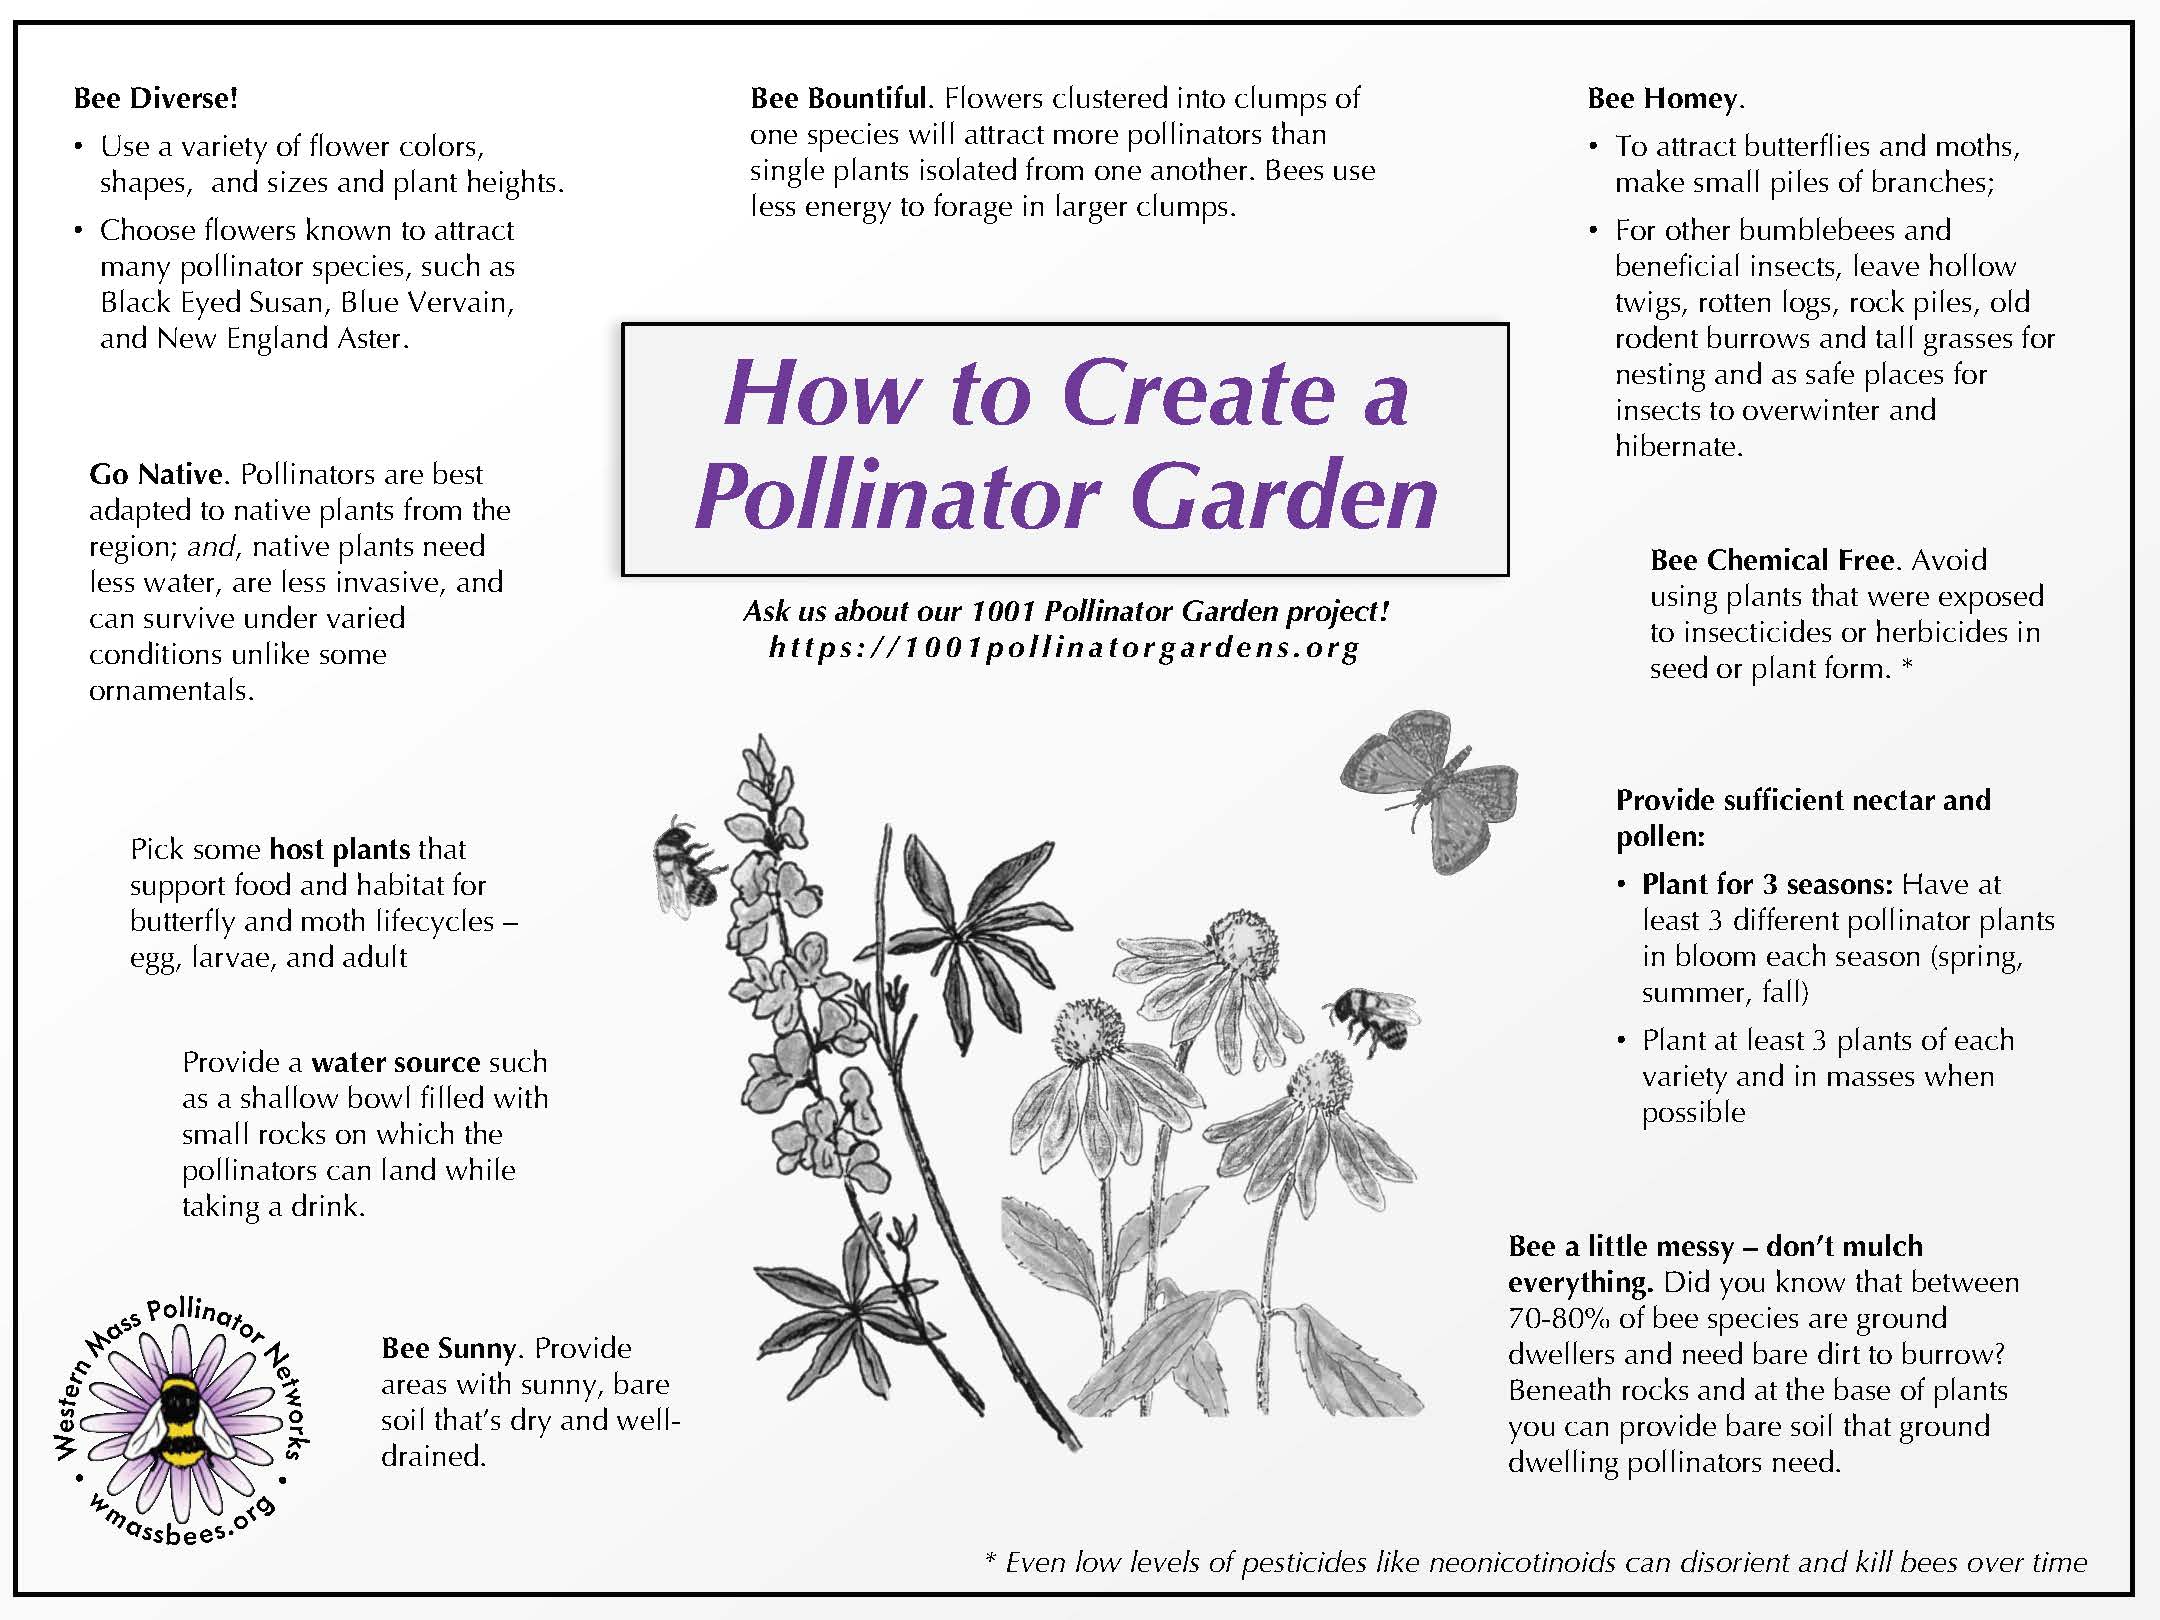 How to Create a Pollinator Garden